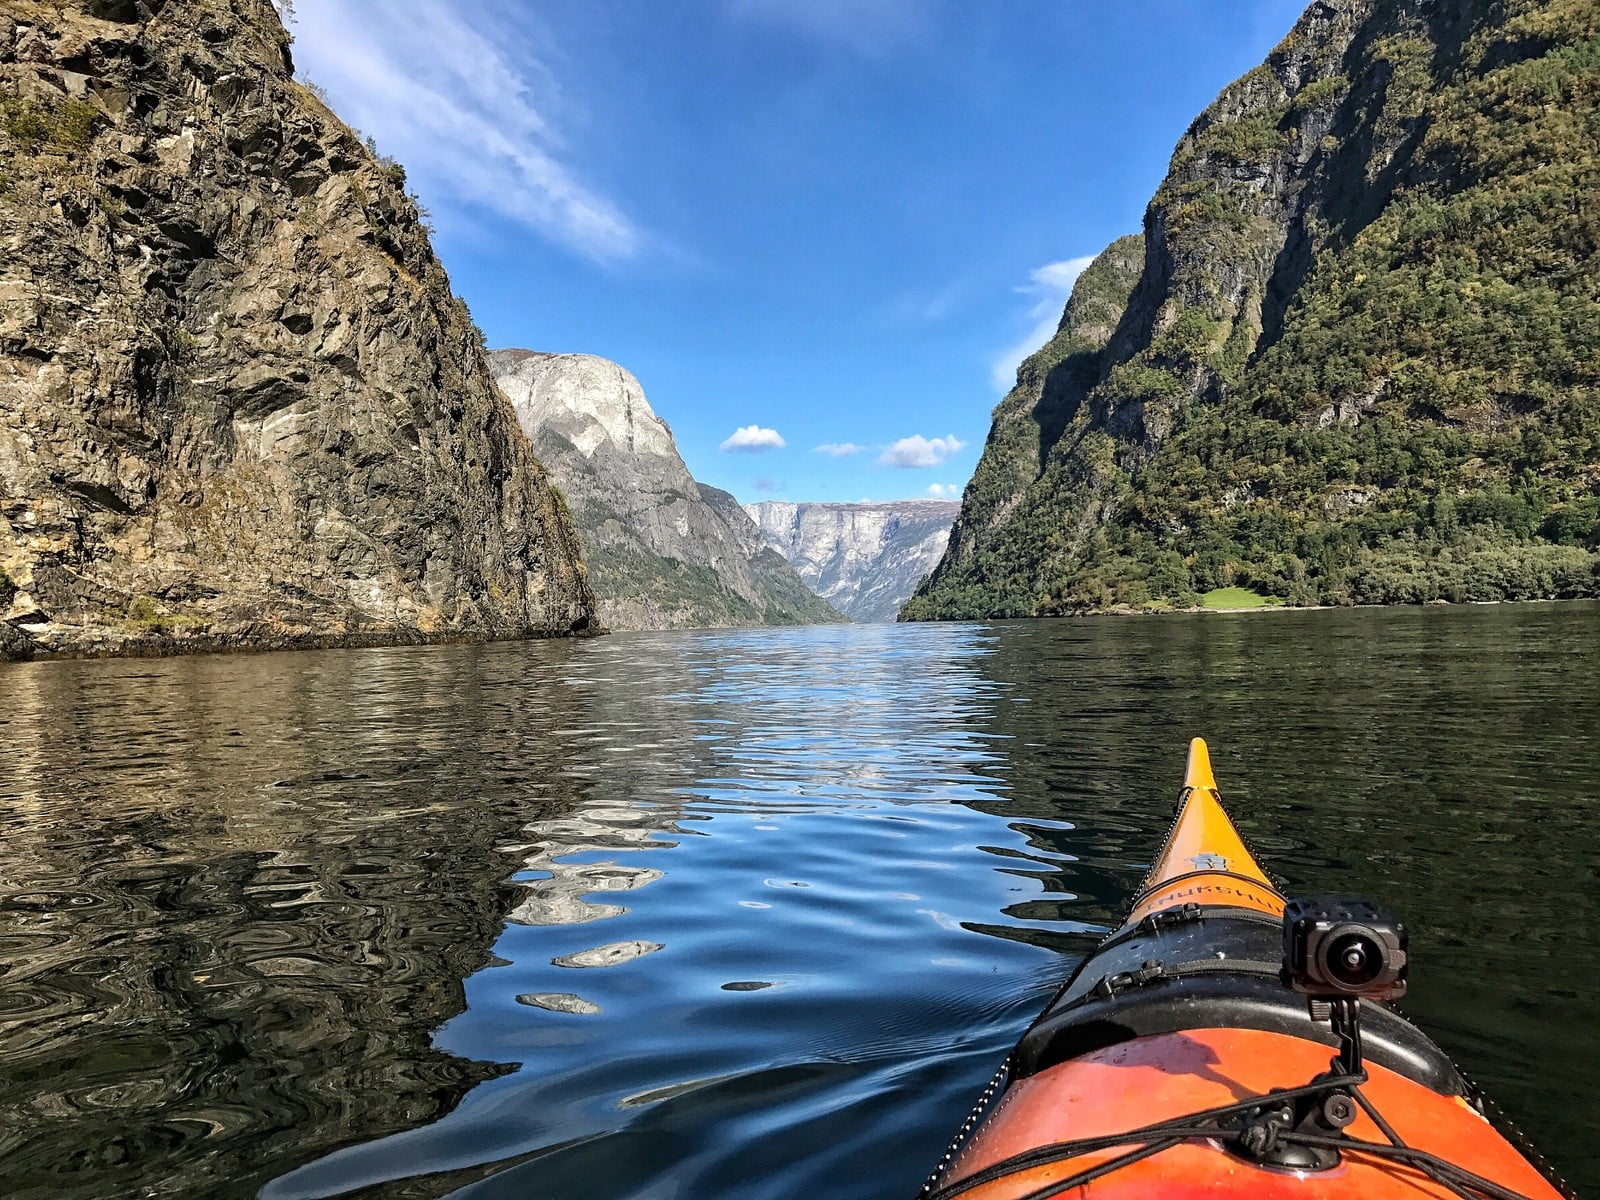 La parte anteriore di un kayak che scivola sui fiordi norvegesi.